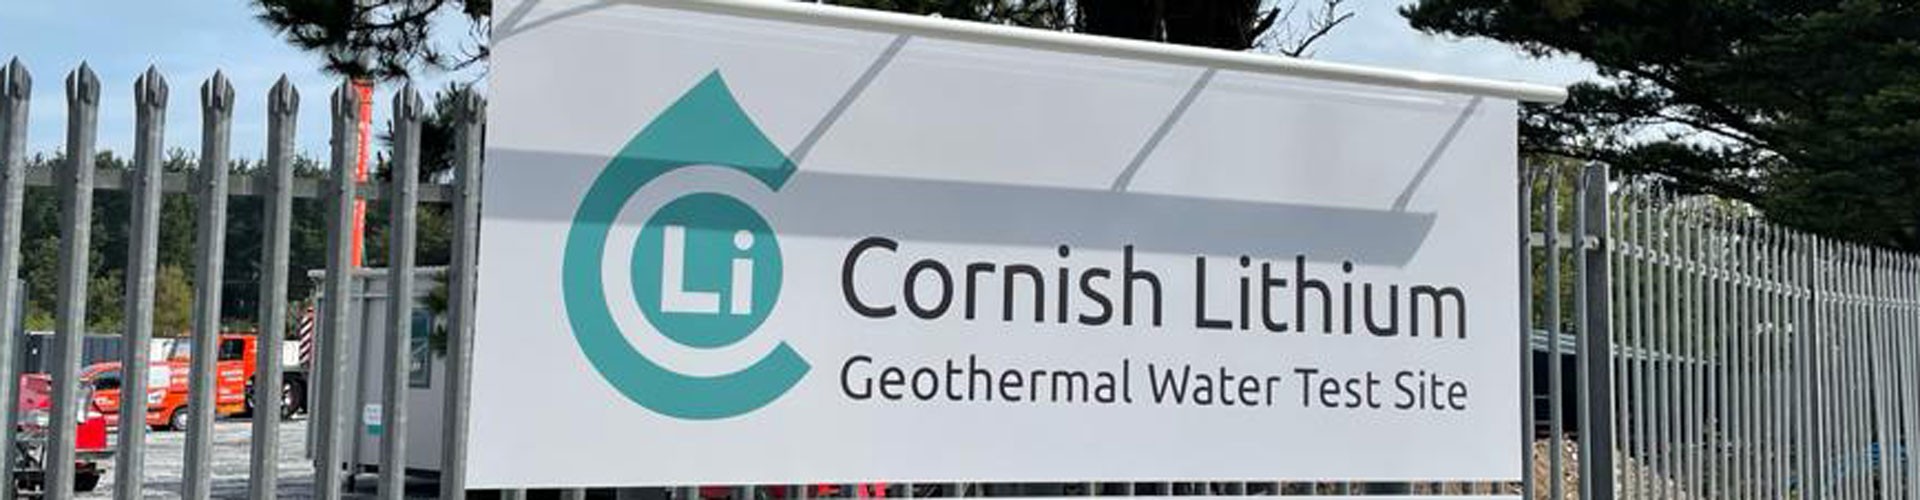 cornish lithium sign